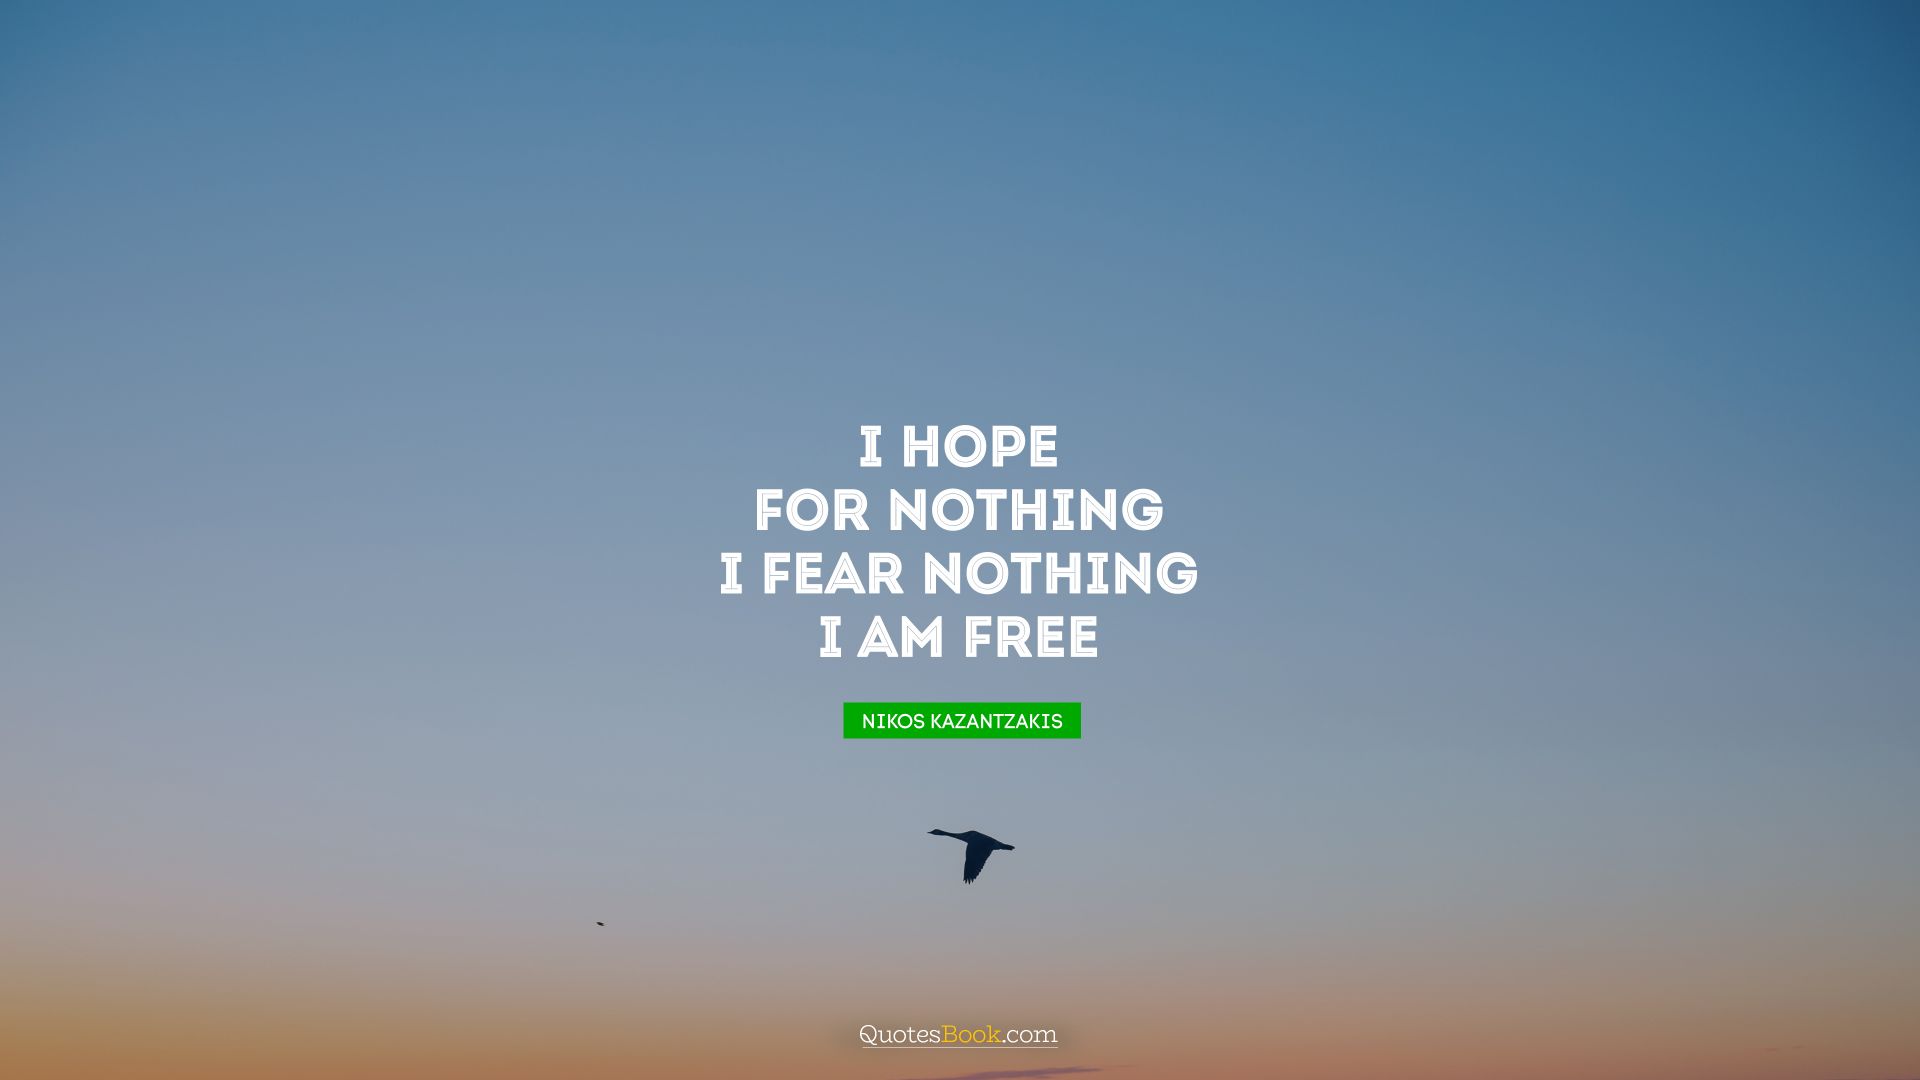 I hope for nothing. I fear nothing. I am free. - Quote by Nikos Kazantzakis